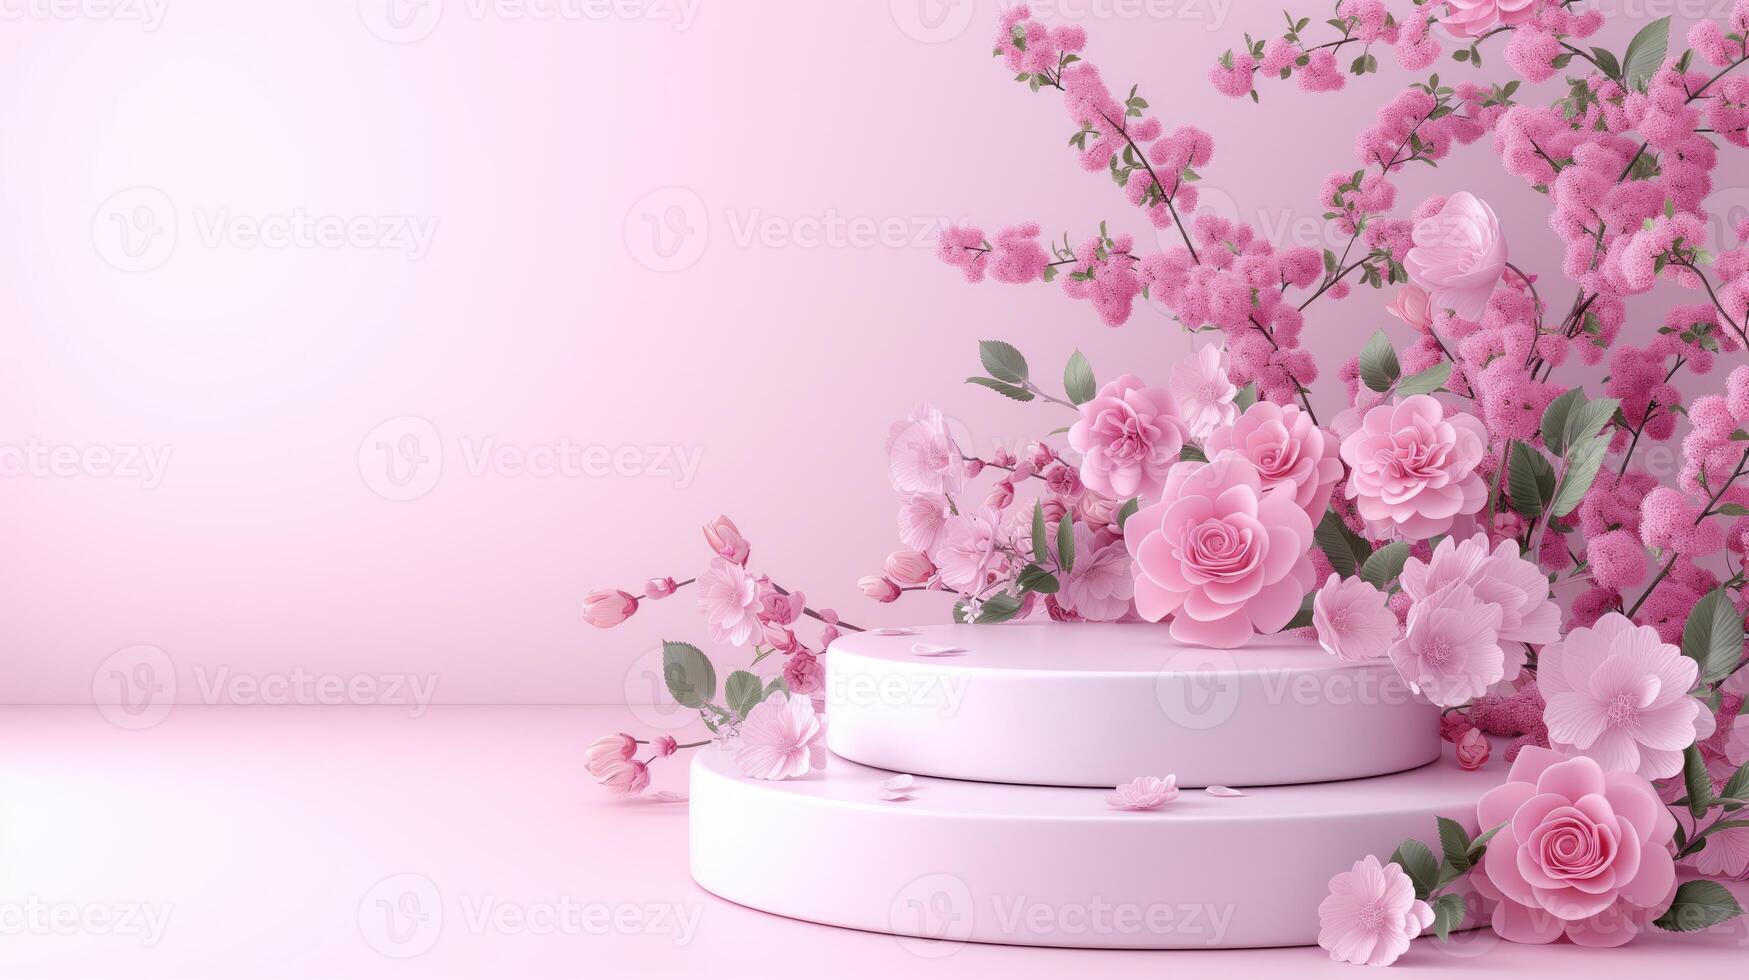 en produkt visa podium skede terar en rosa bakgrund Utsmyckad med rosa blommor foto